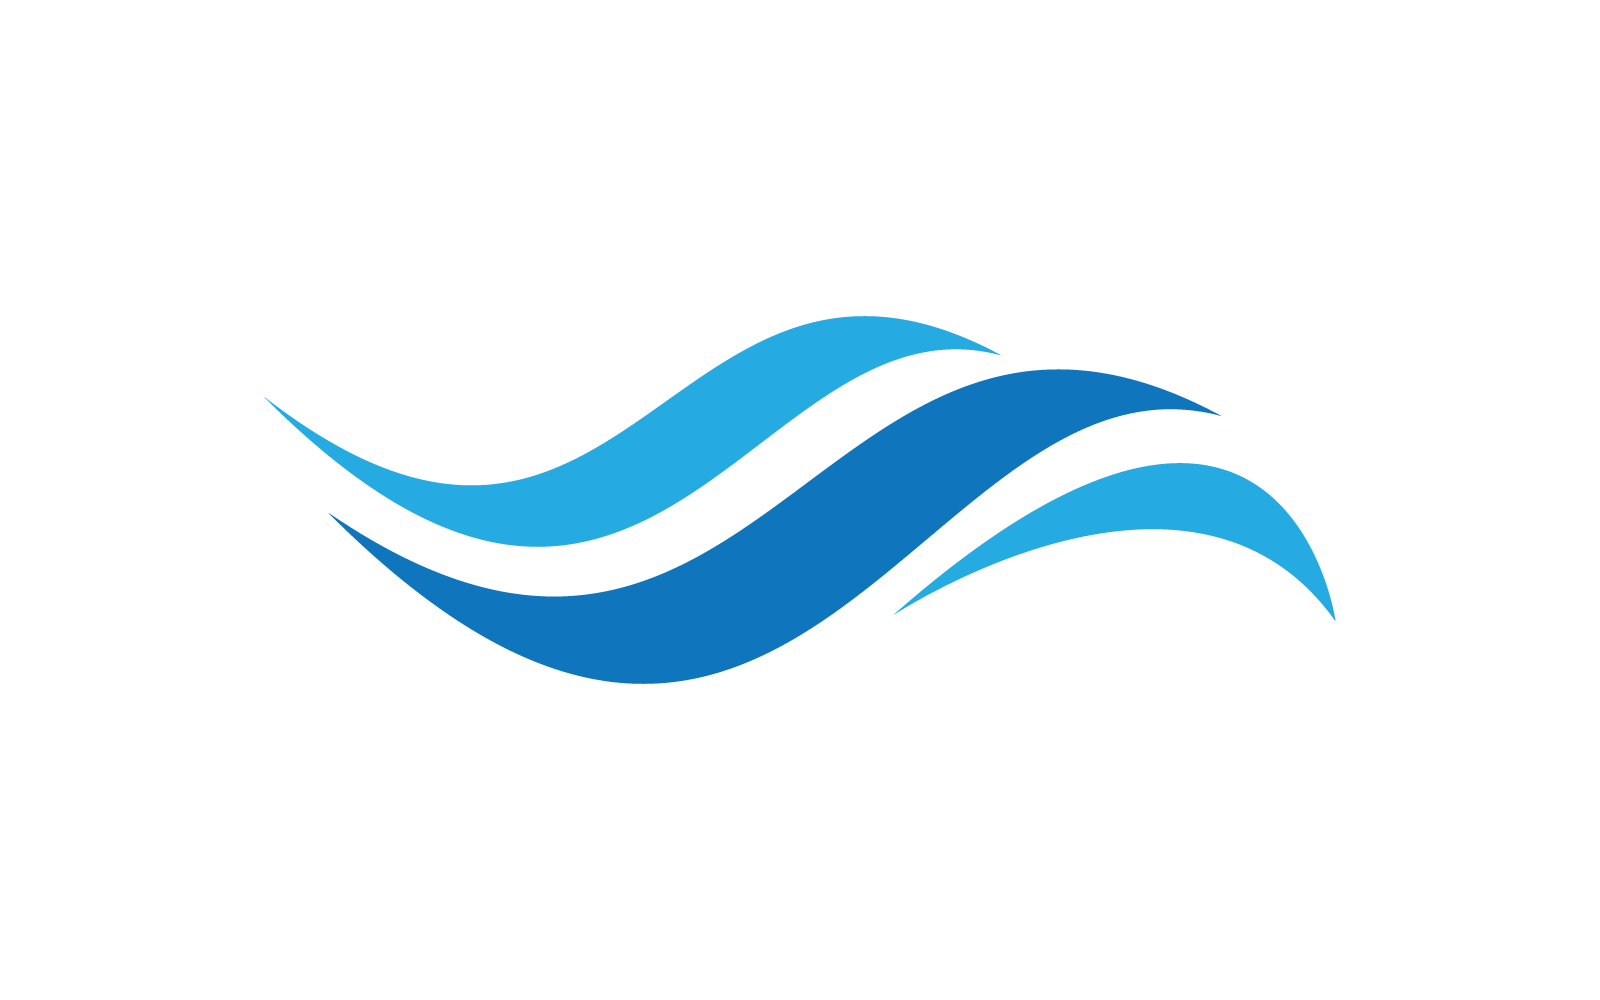 Water Wave illustration logo vector flat design